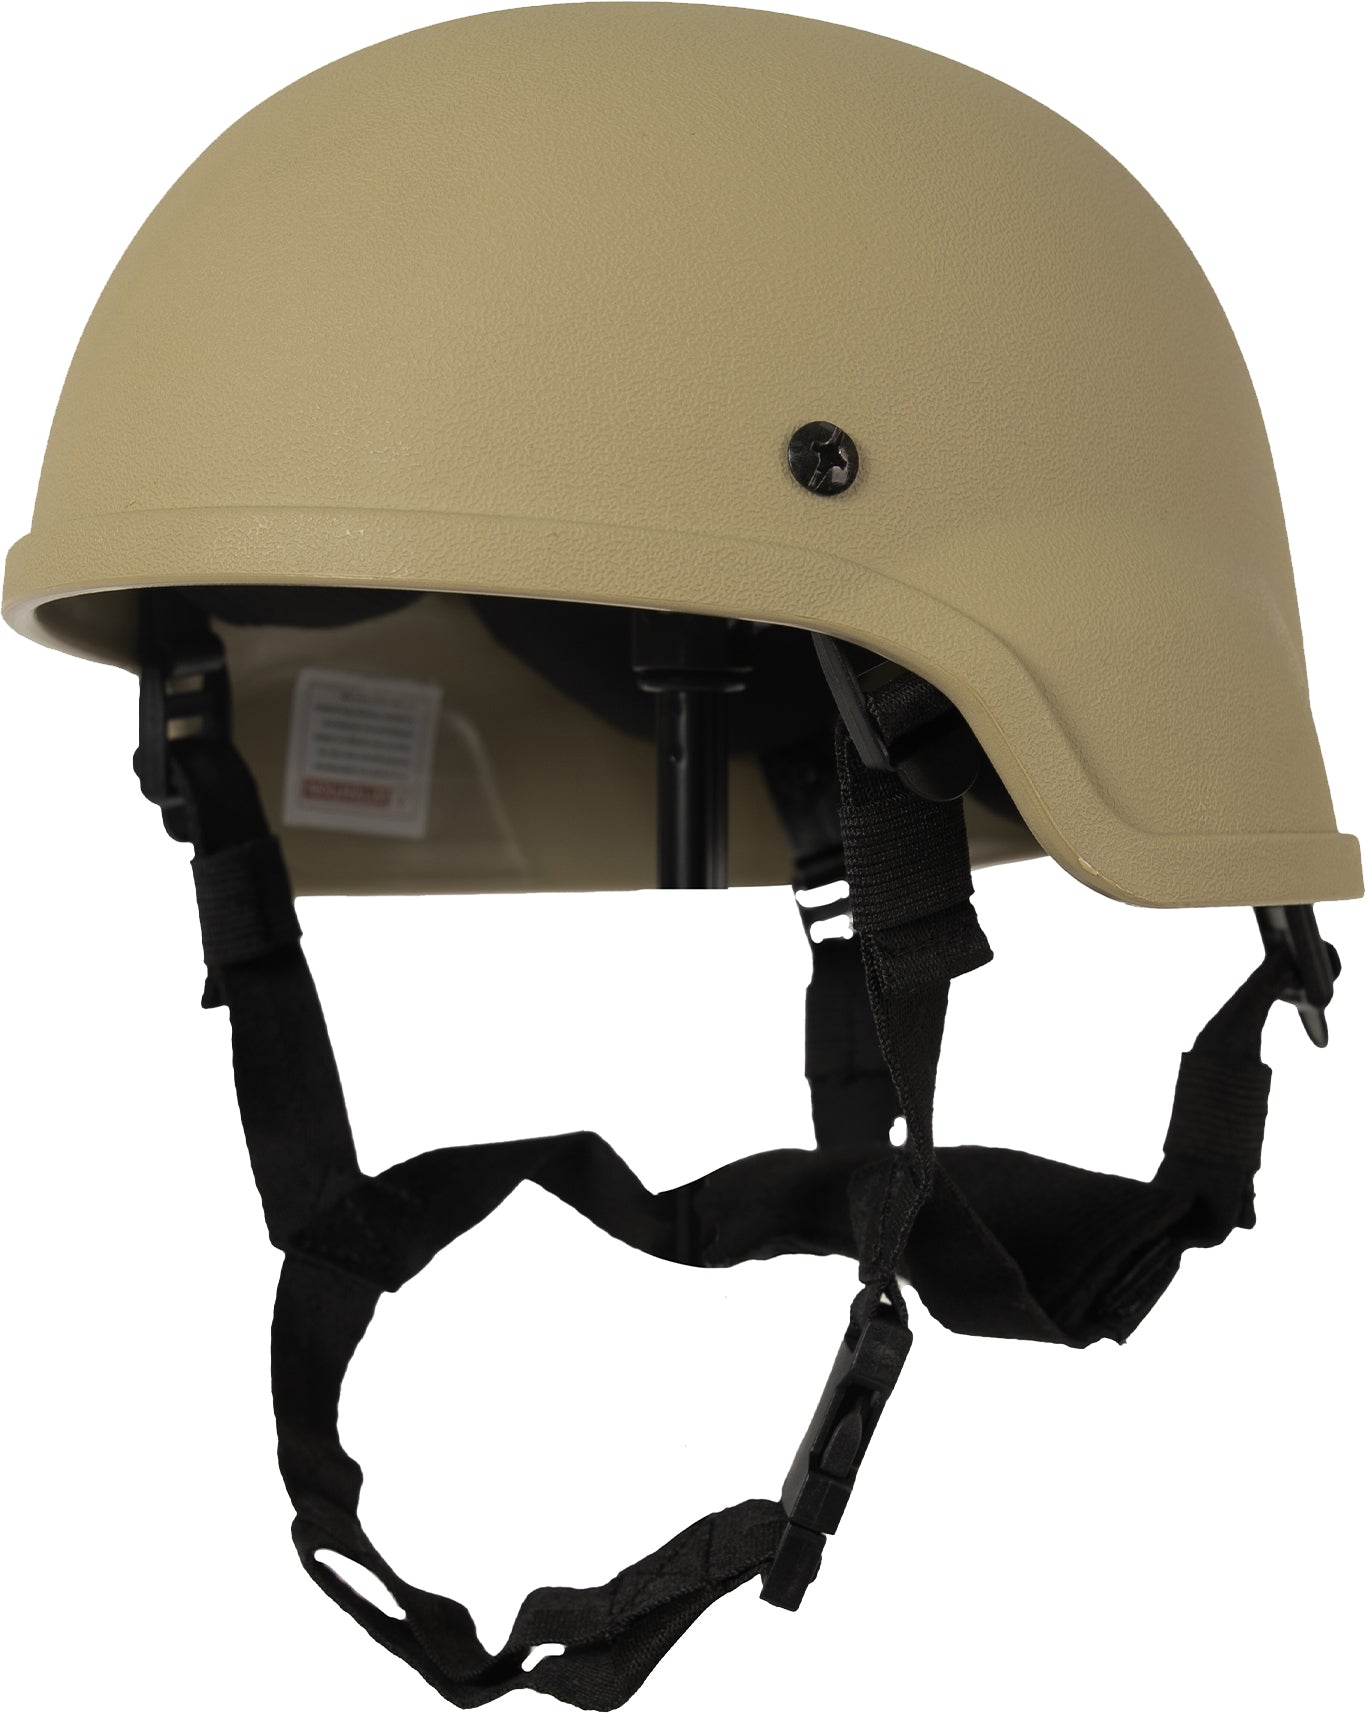 Tan ABS Mich-2000 Replica Tactical Helmet